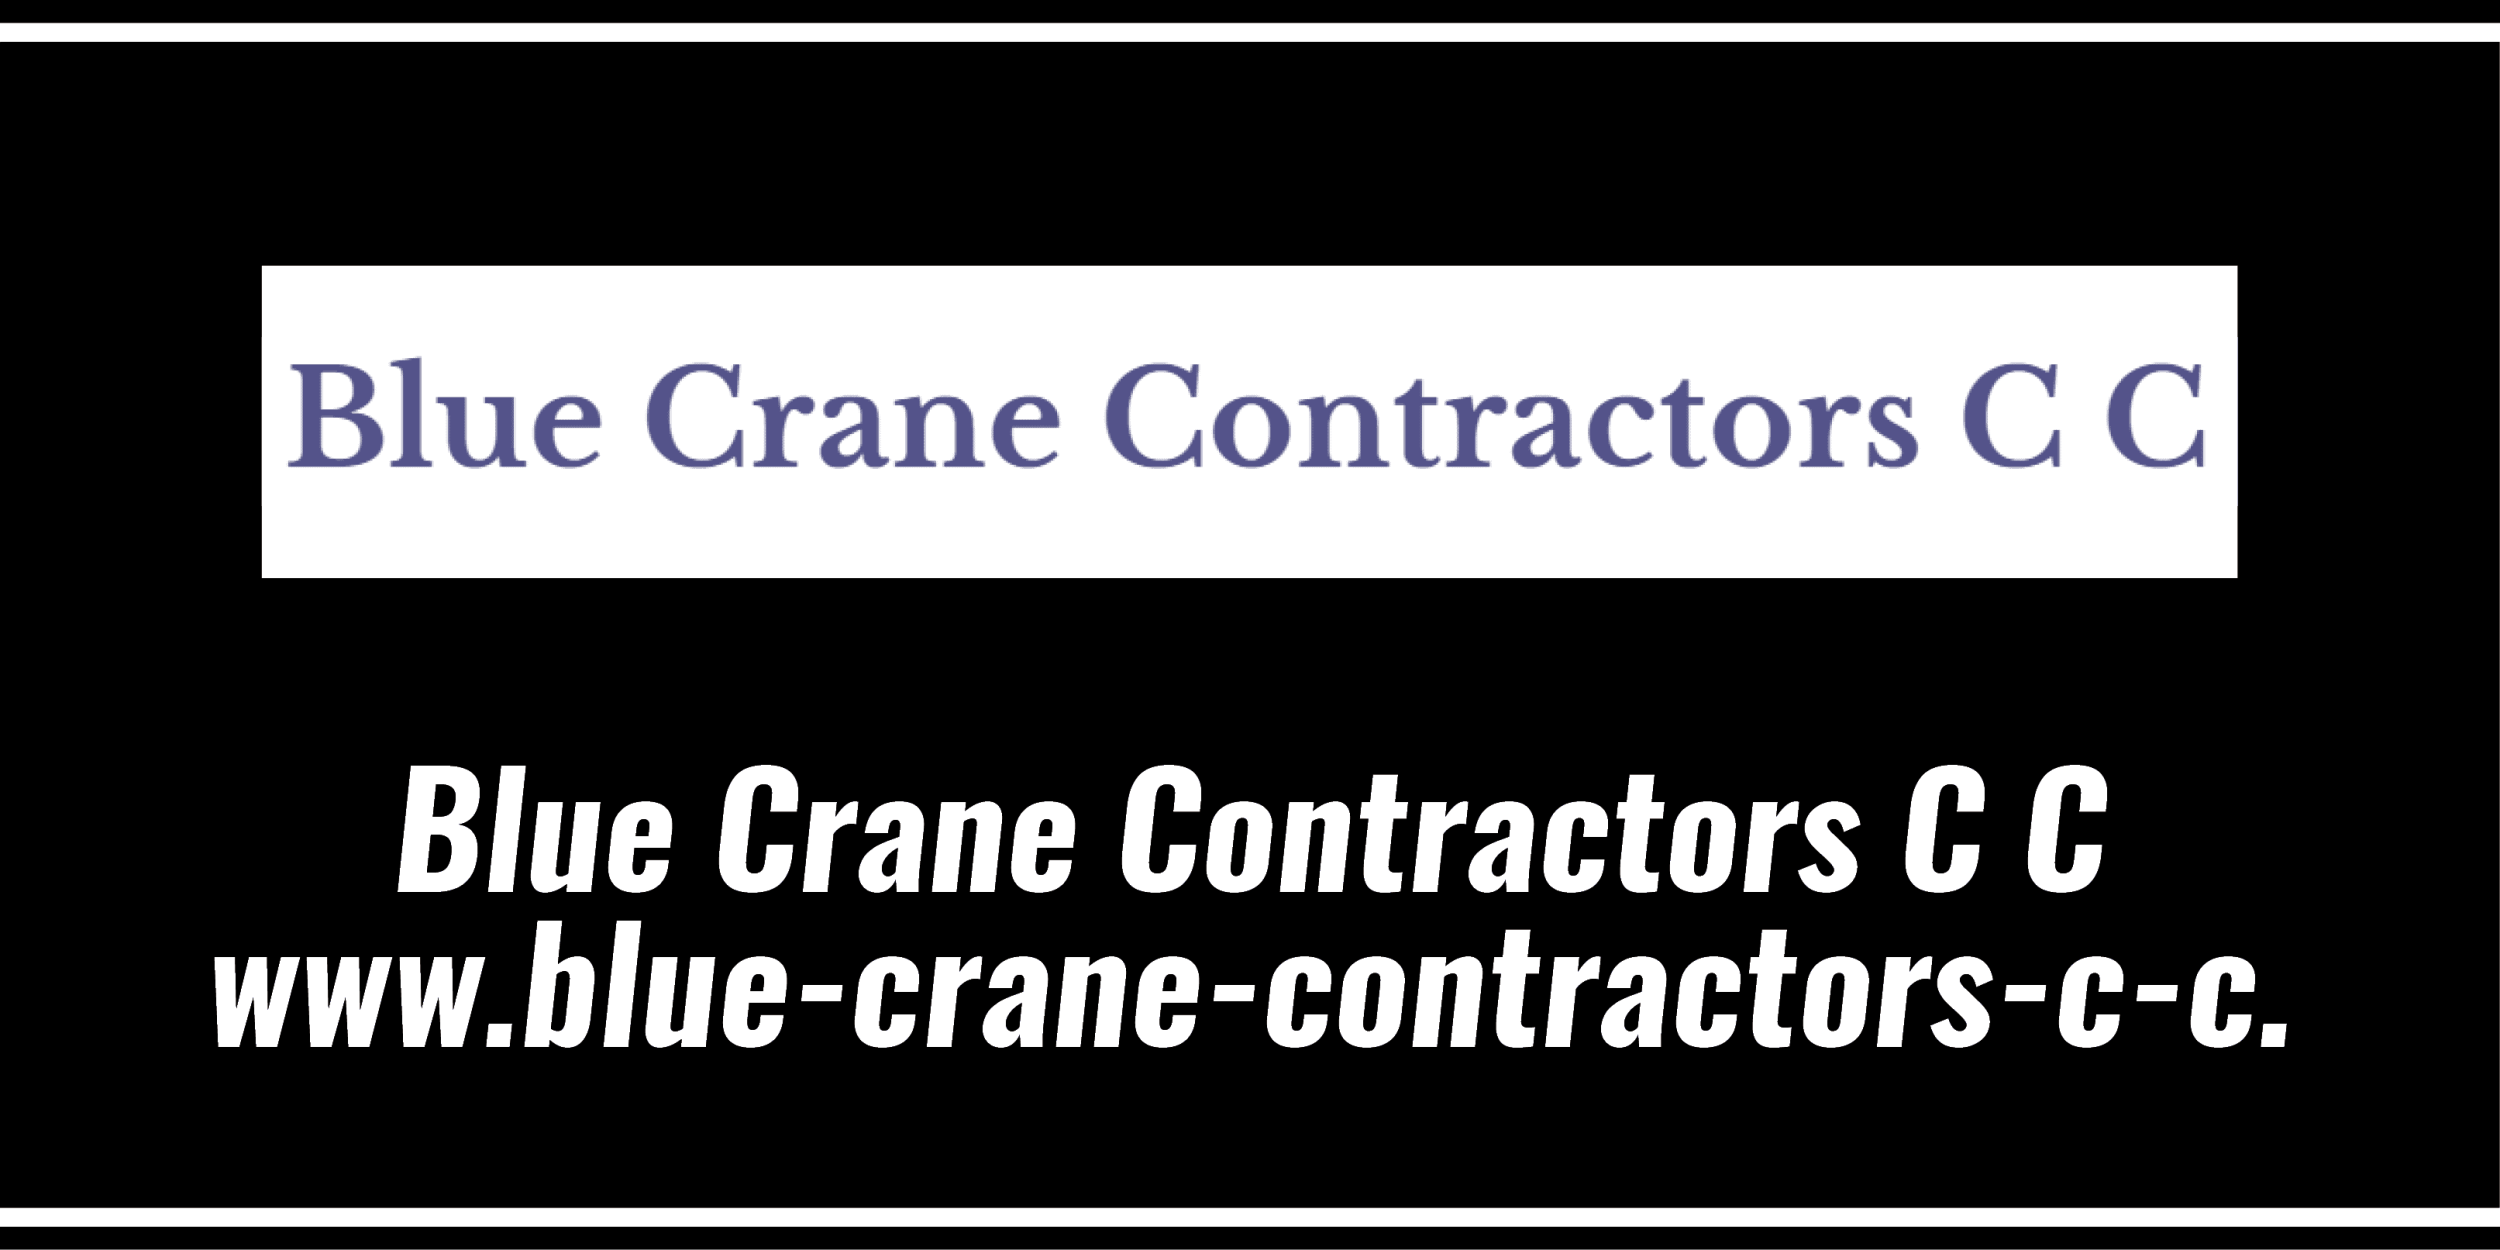 Blue Crane Contractors C C